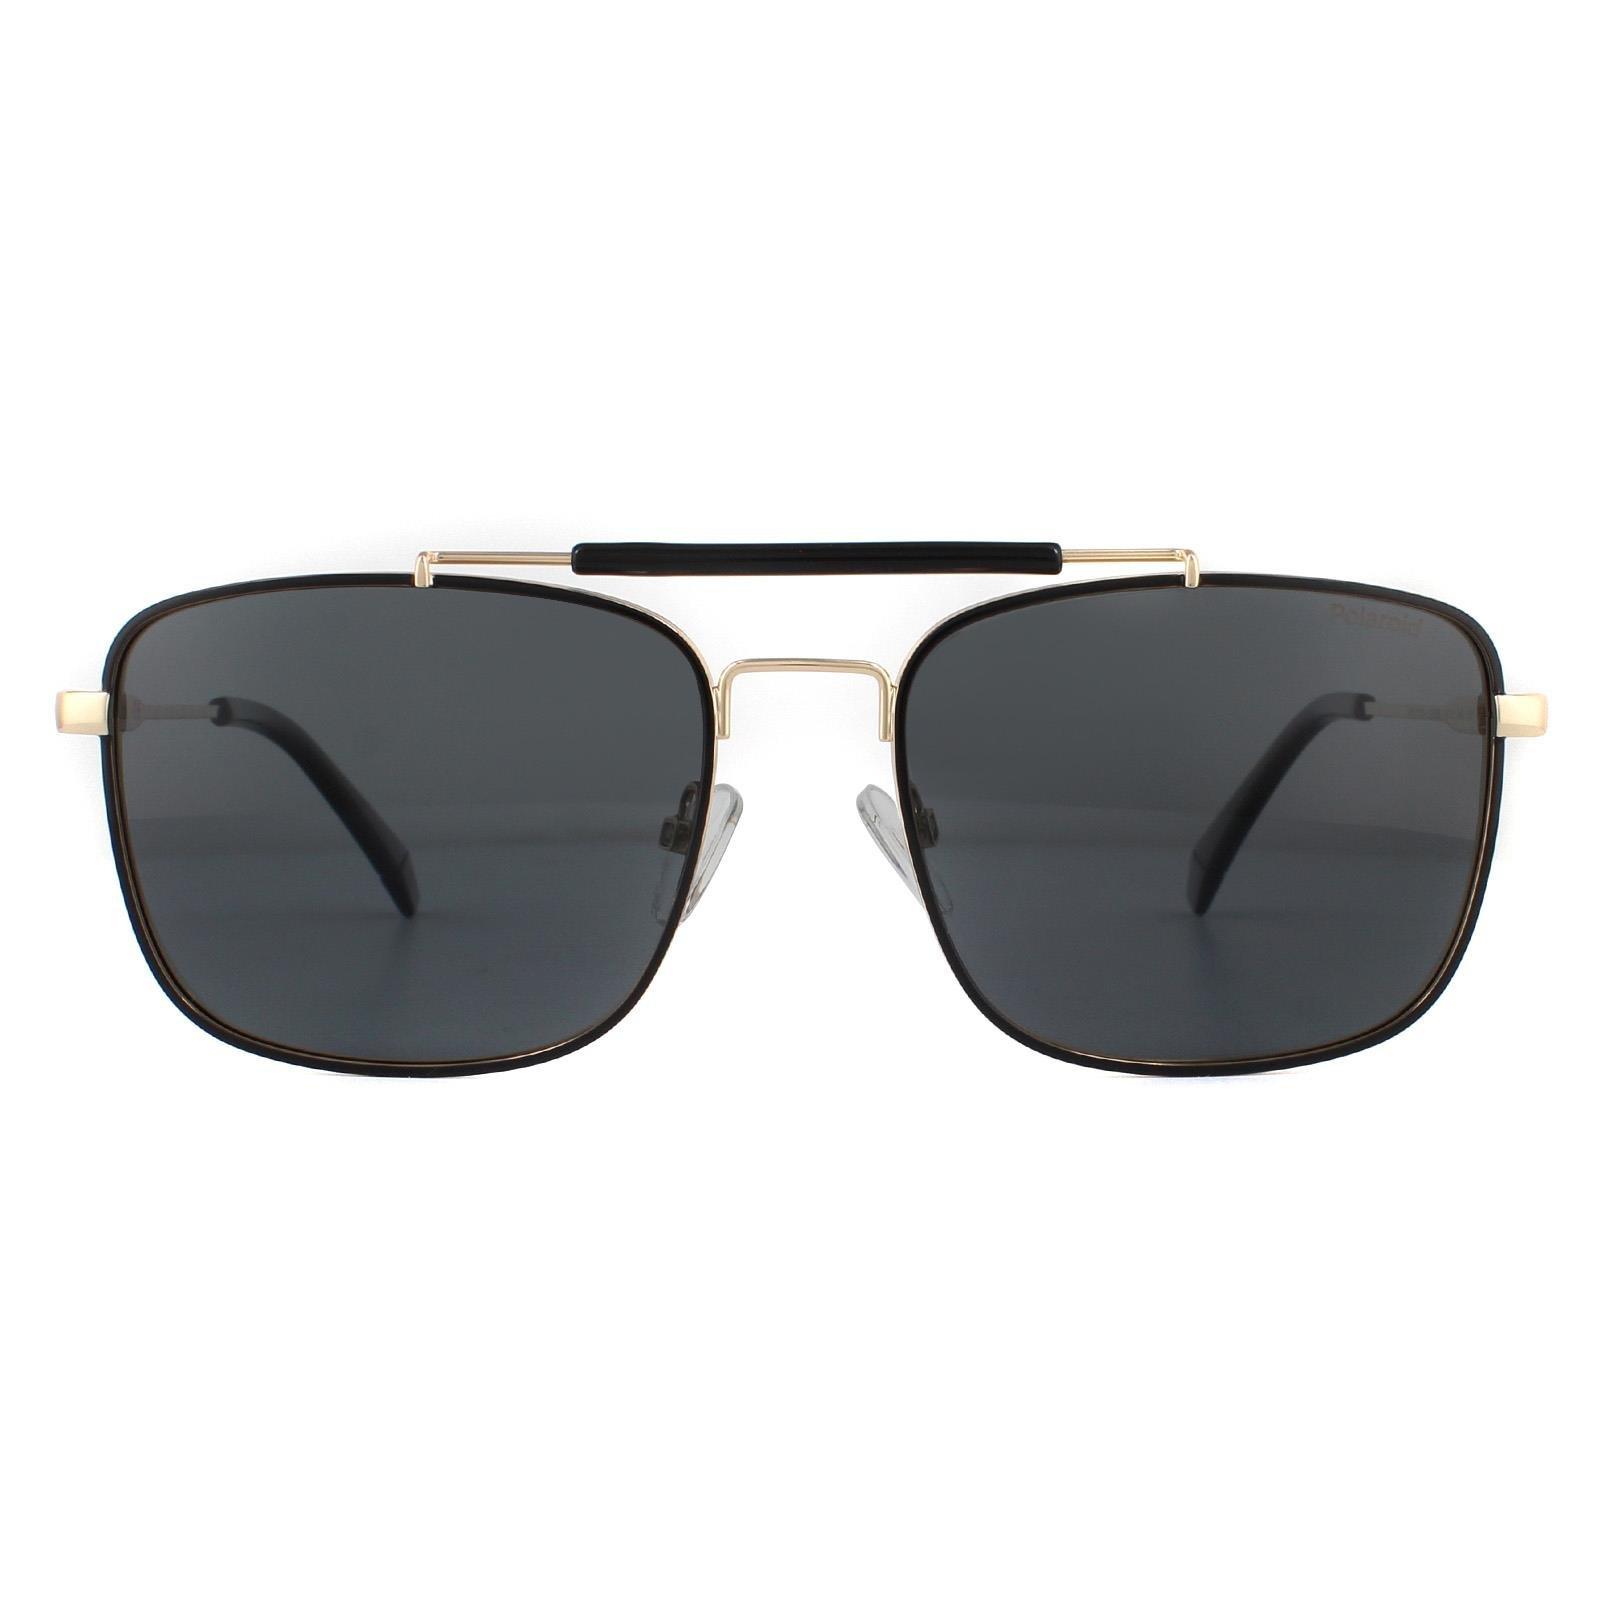 Поляризованные солнцезащитные очки Aviator Black Gold Grey Polaroid, золото polaroid pld 6107 s x 010 m9